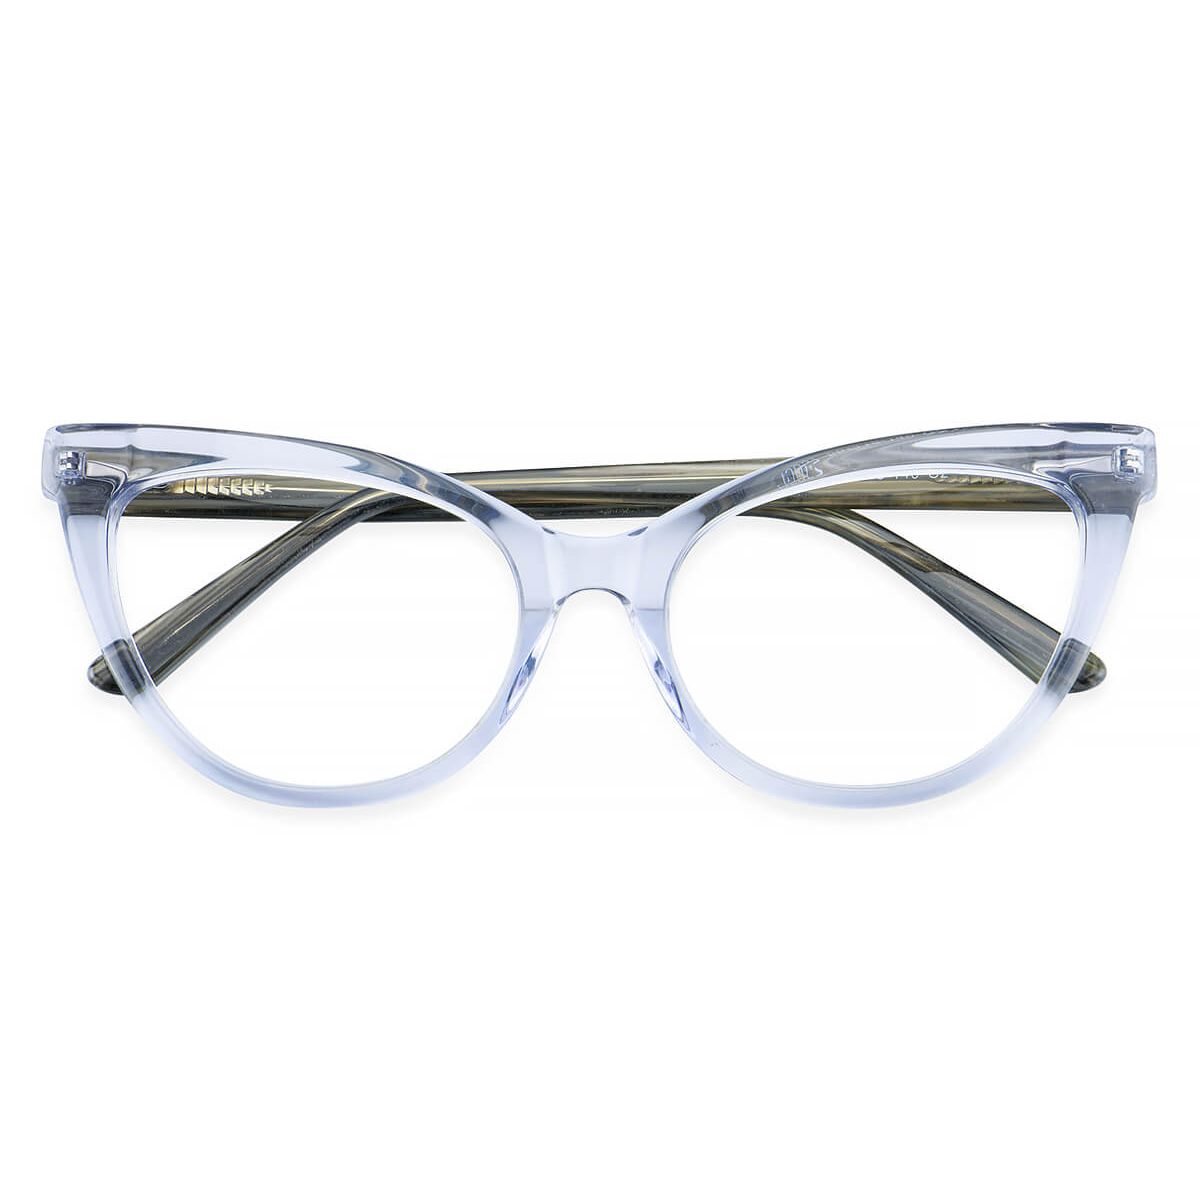 H5057 Cat-eye Gray Eyeglasses Frames | Leoptique